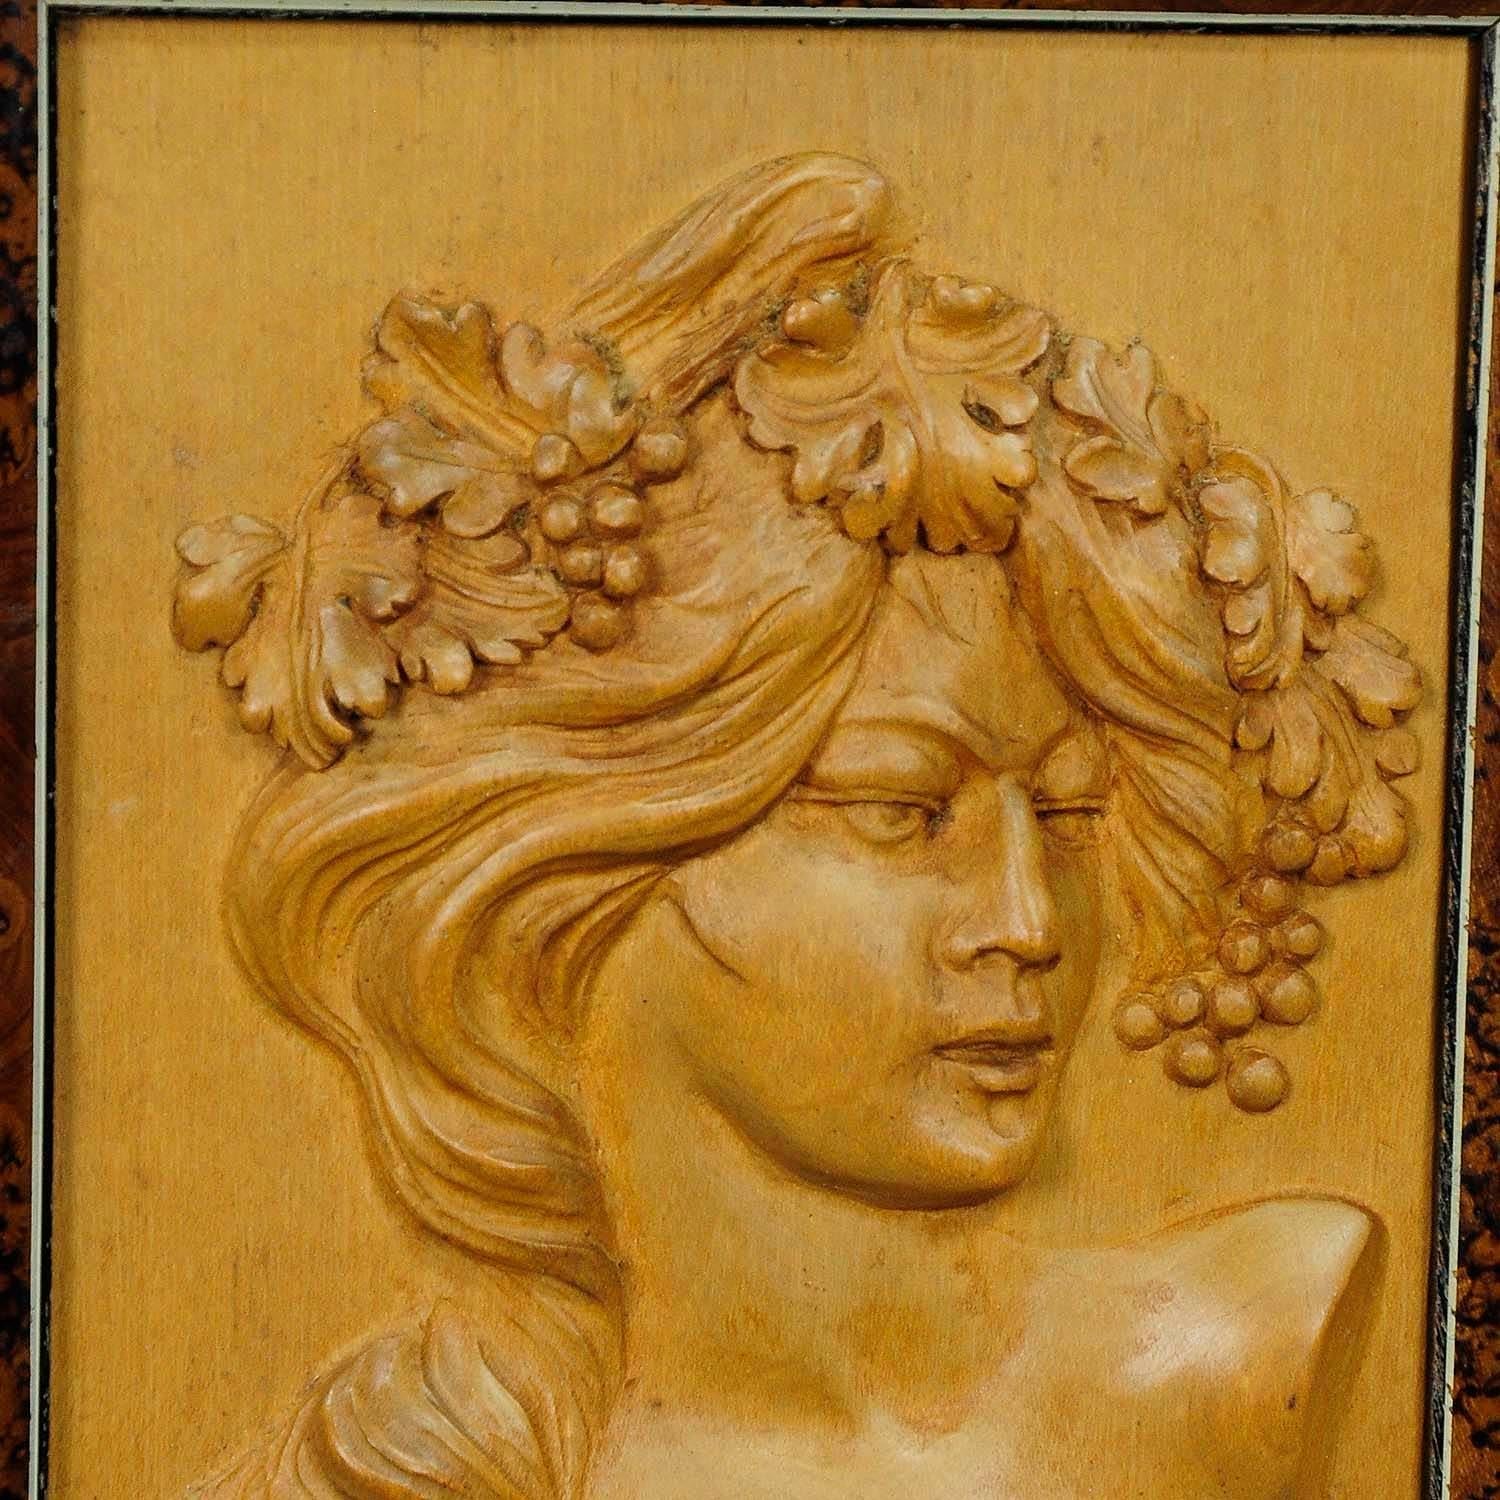 Une jolie application murale en bois représentant une dame victorienne avec des raisins et des feuilles de vigne dans les cheveux. Sculptée à la main vers 1920 en Allemagne.
Dimensions : largeur : 5.71